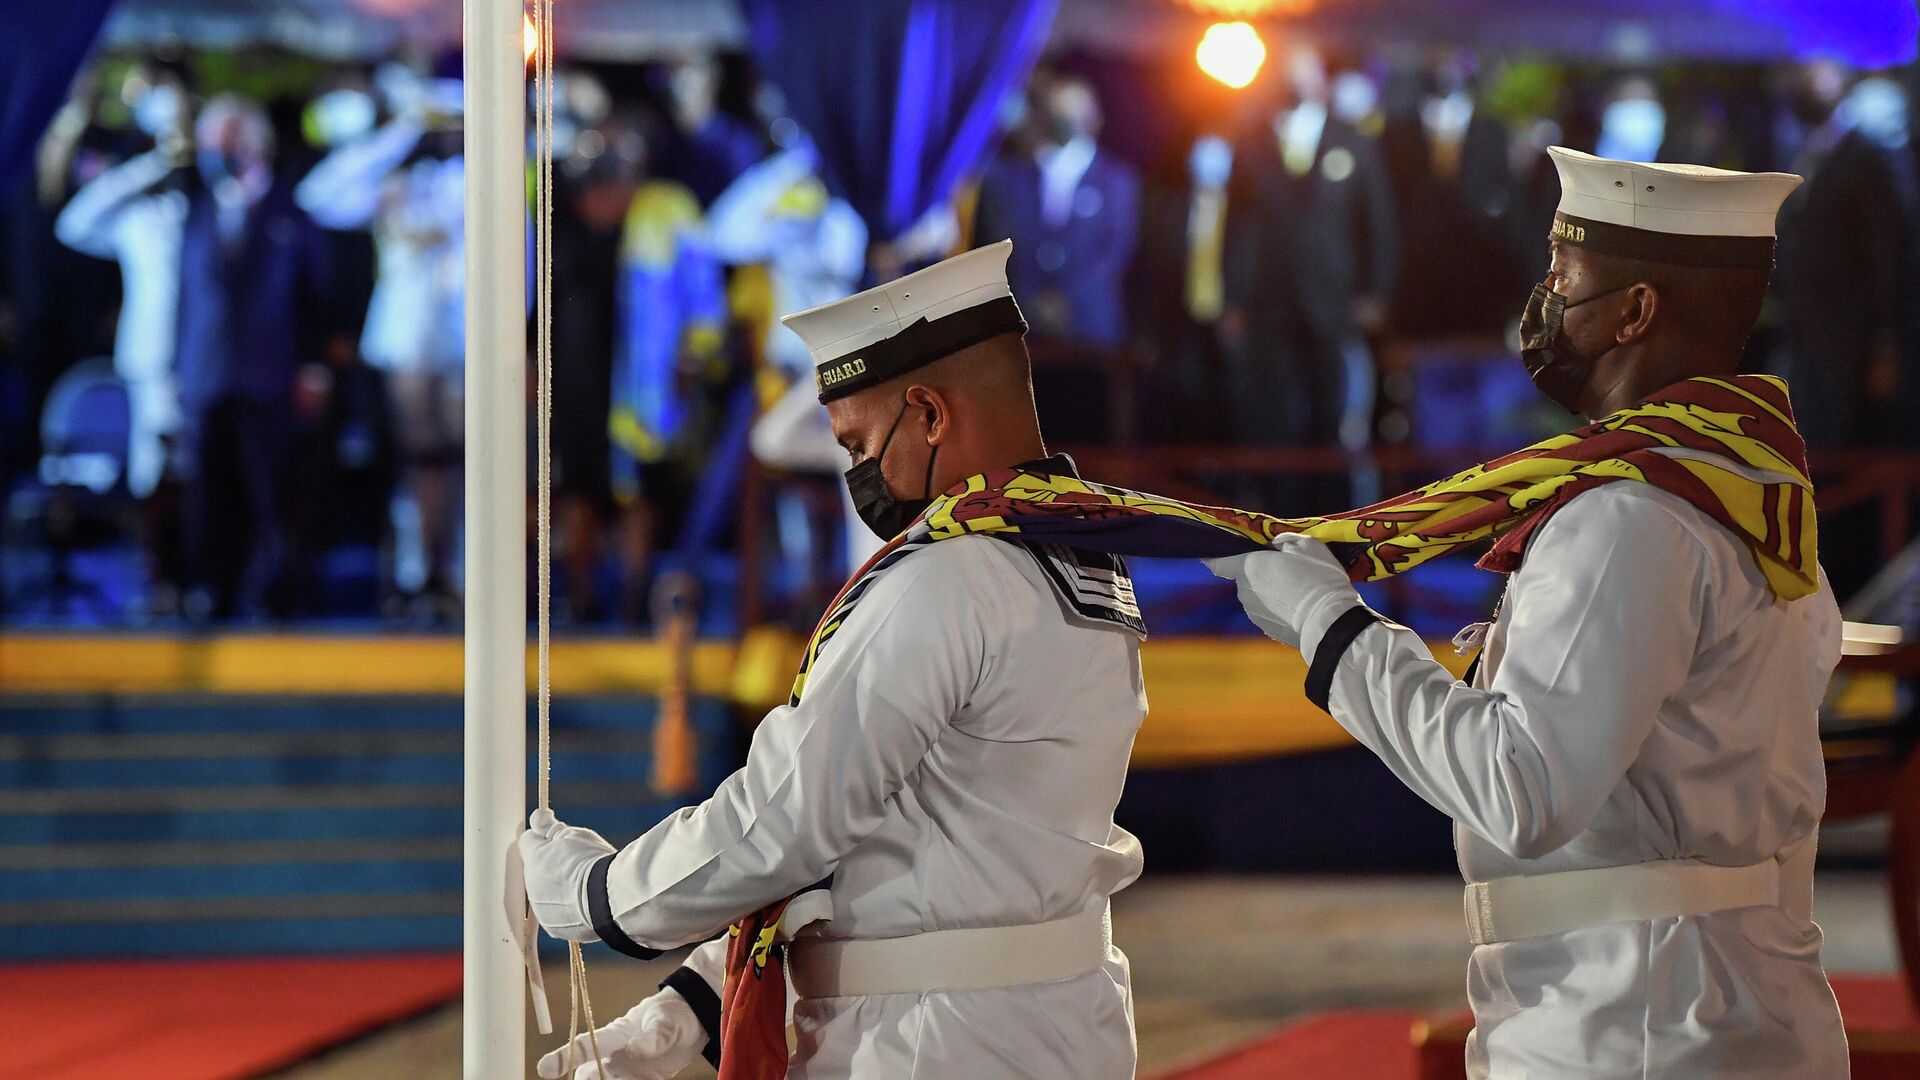 Снятие Королевского штандарта Великобритании во время церемонии инаугурации президента Барбадоса - РИА Новости, 1920, 30.11.2021